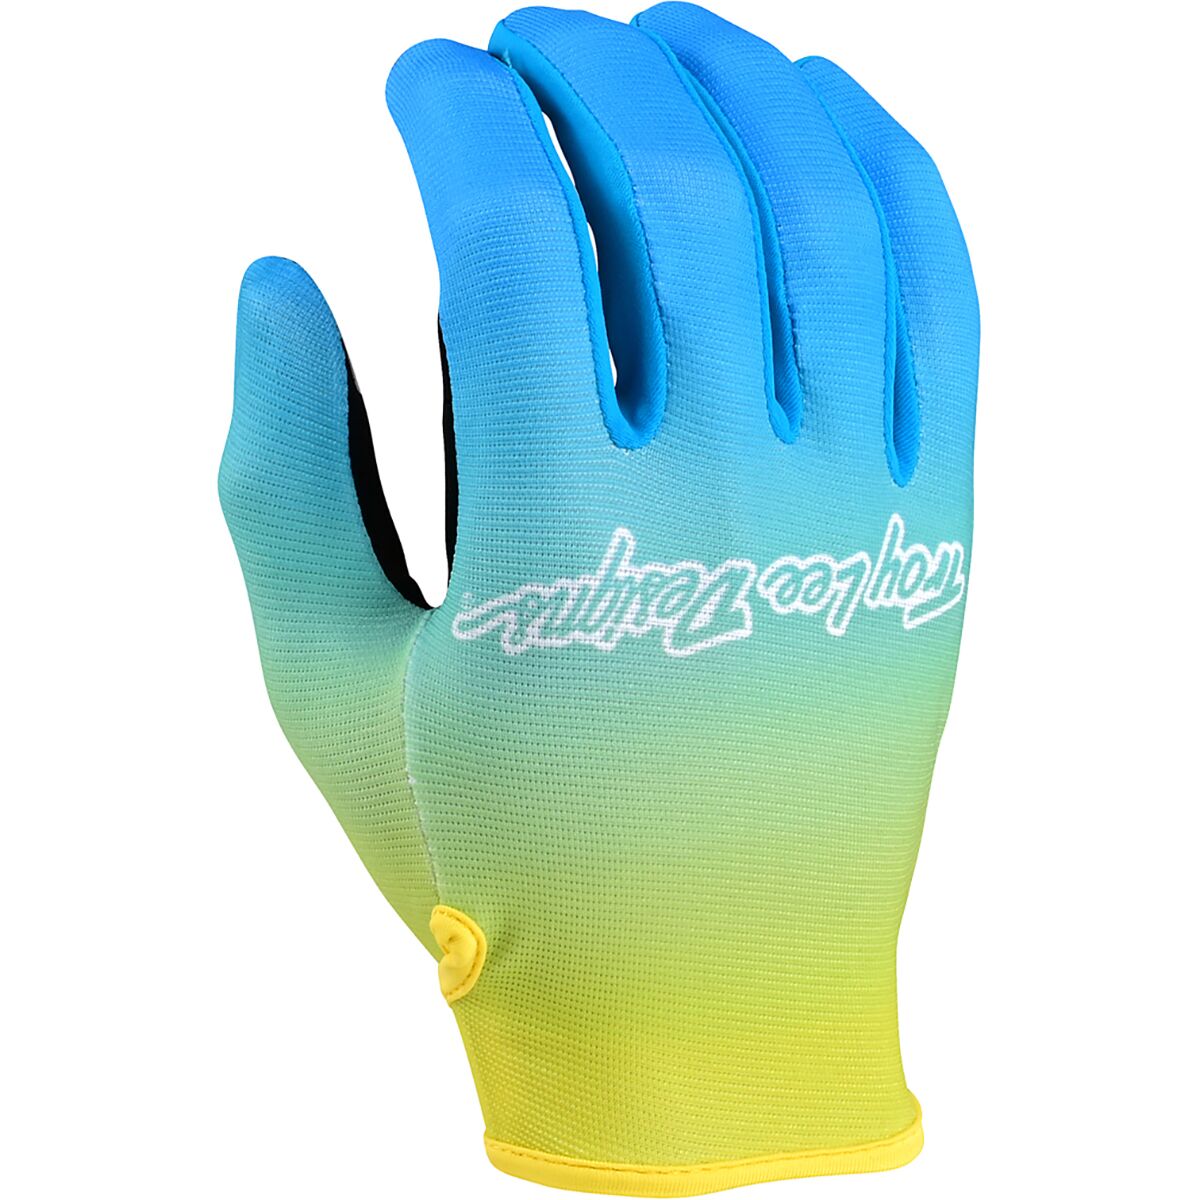 Troy Lee Designs Flowline Glove - Men's